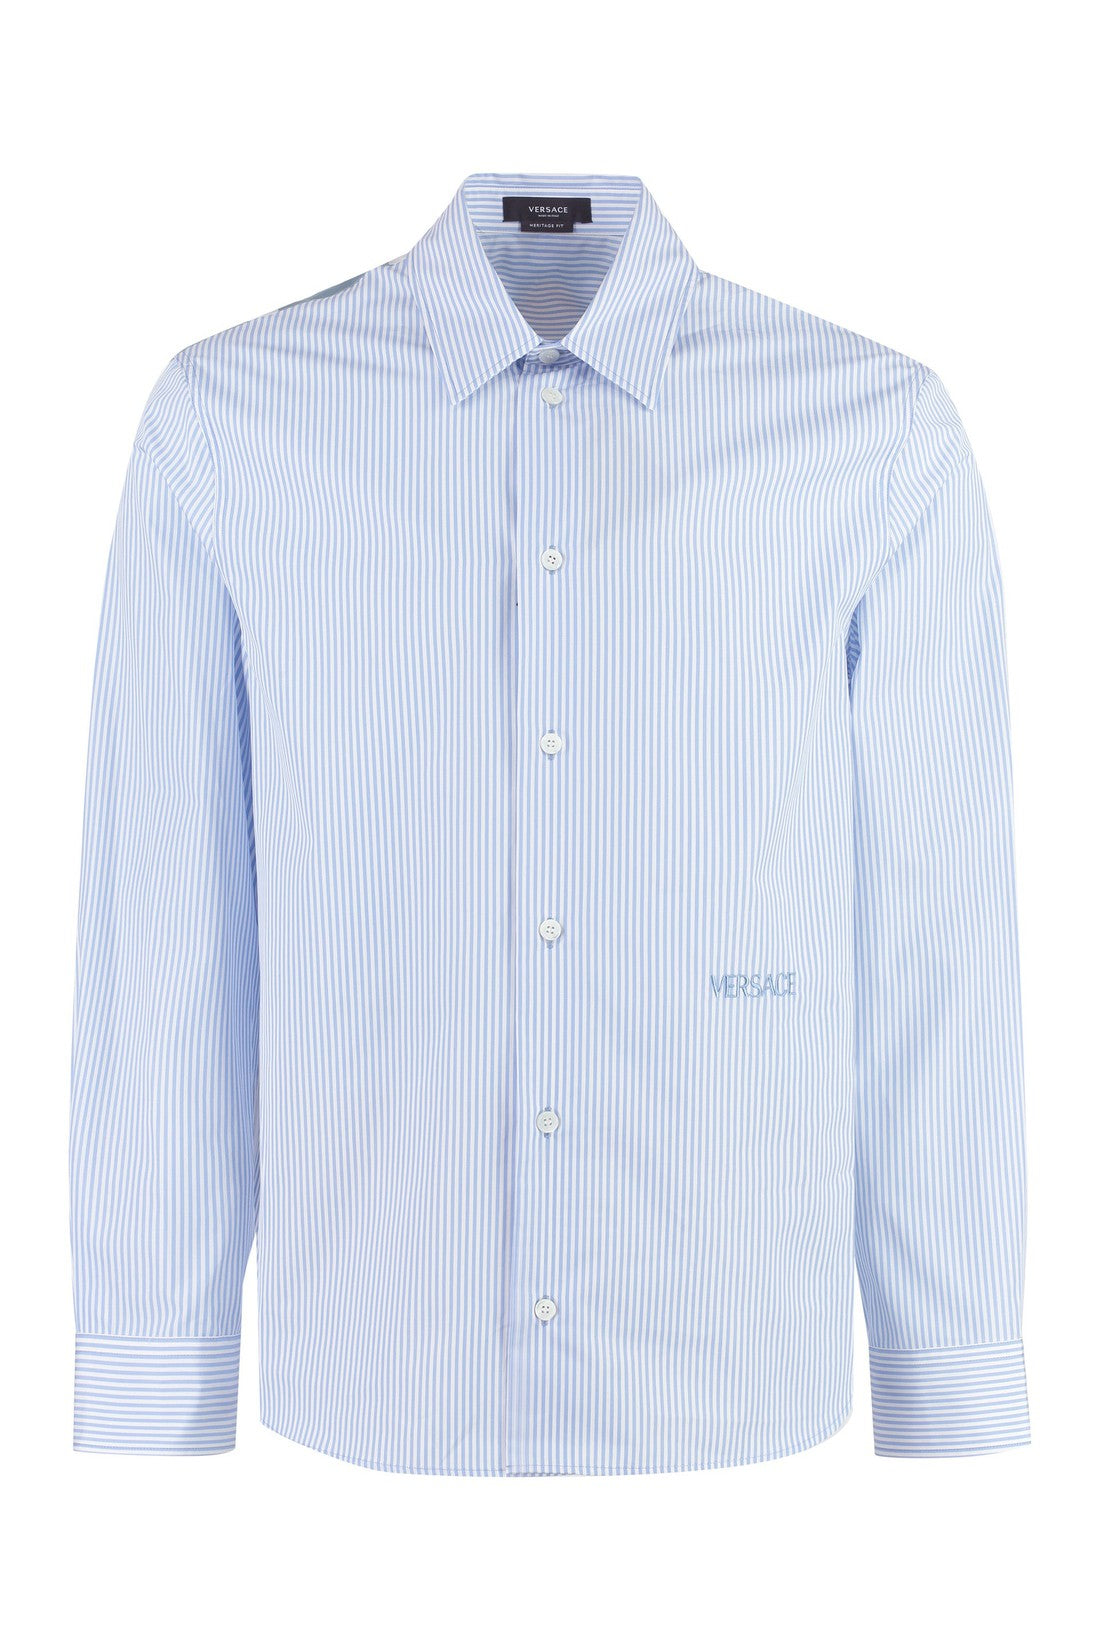 Versace-OUTLET-SALE-Cotton poplin shirt-ARCHIVIST